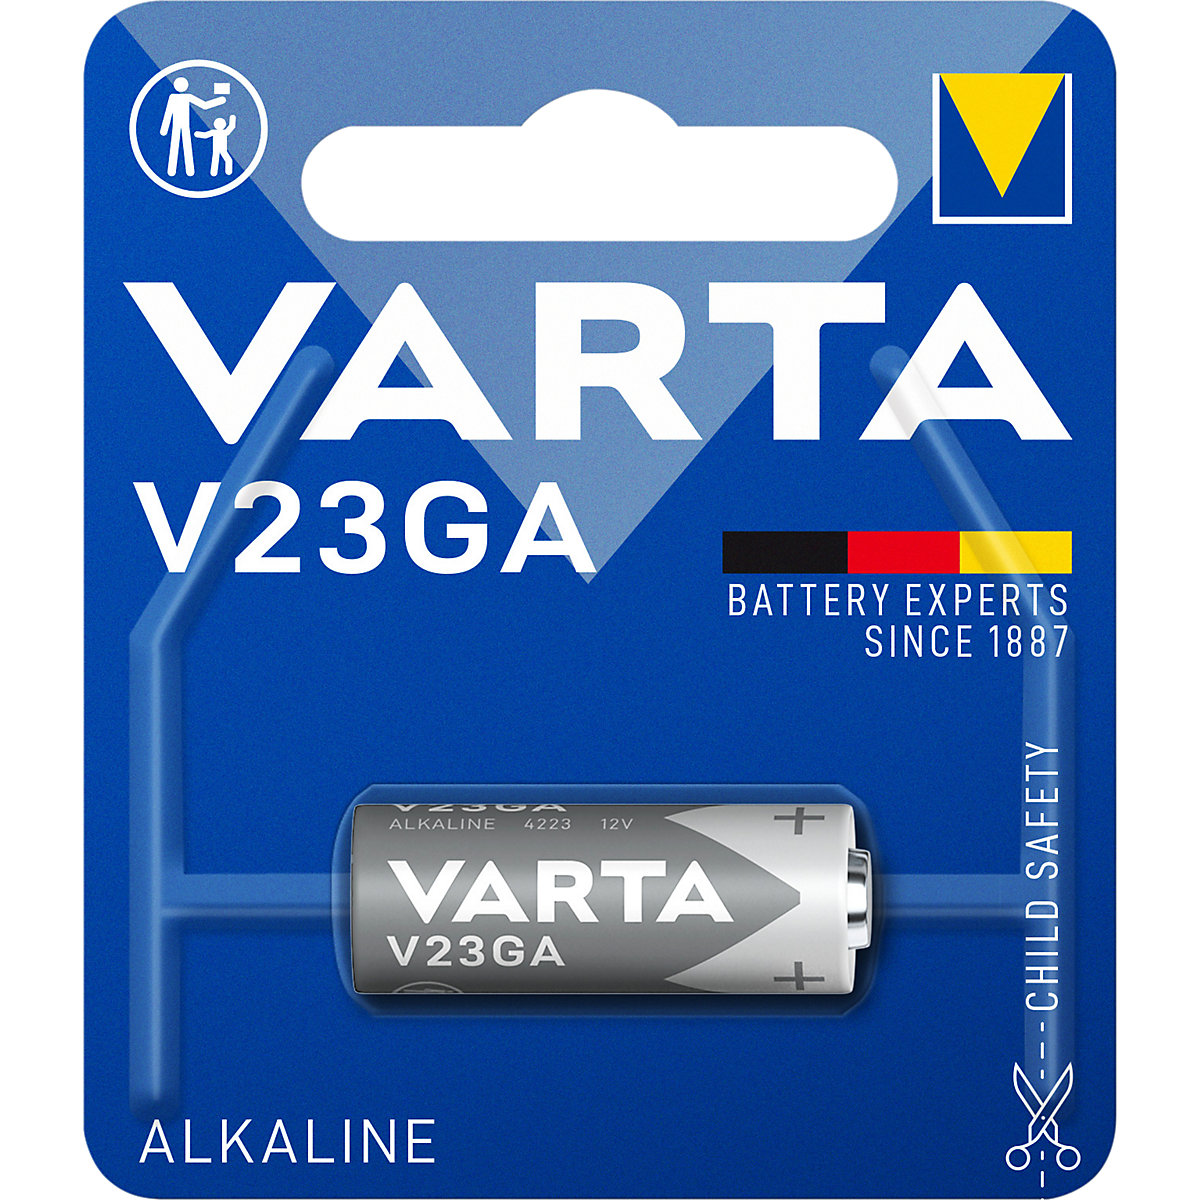 ALKALINE special battery - VARTA